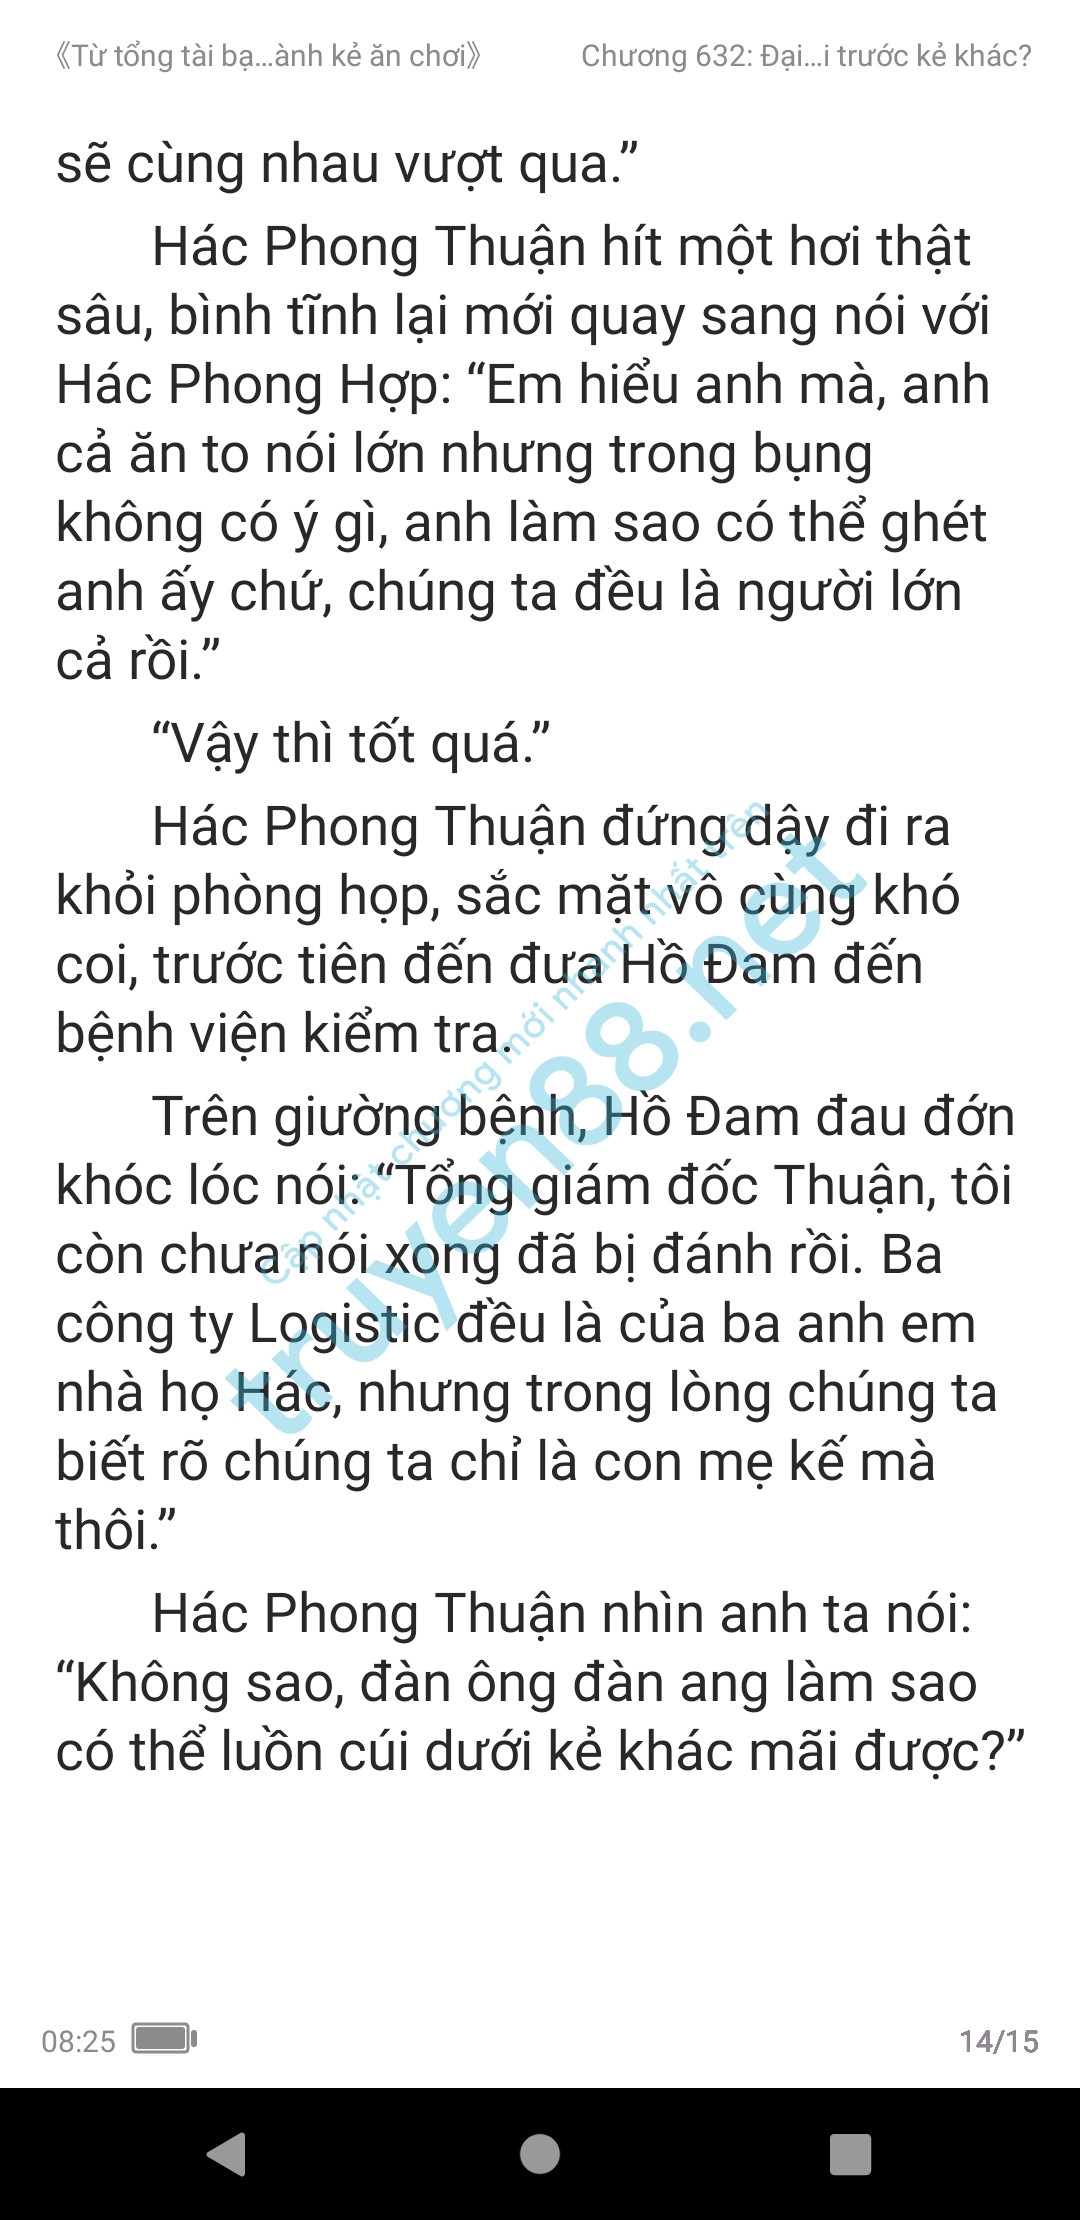 ke-an-choi-bien-tong-tai-632-2